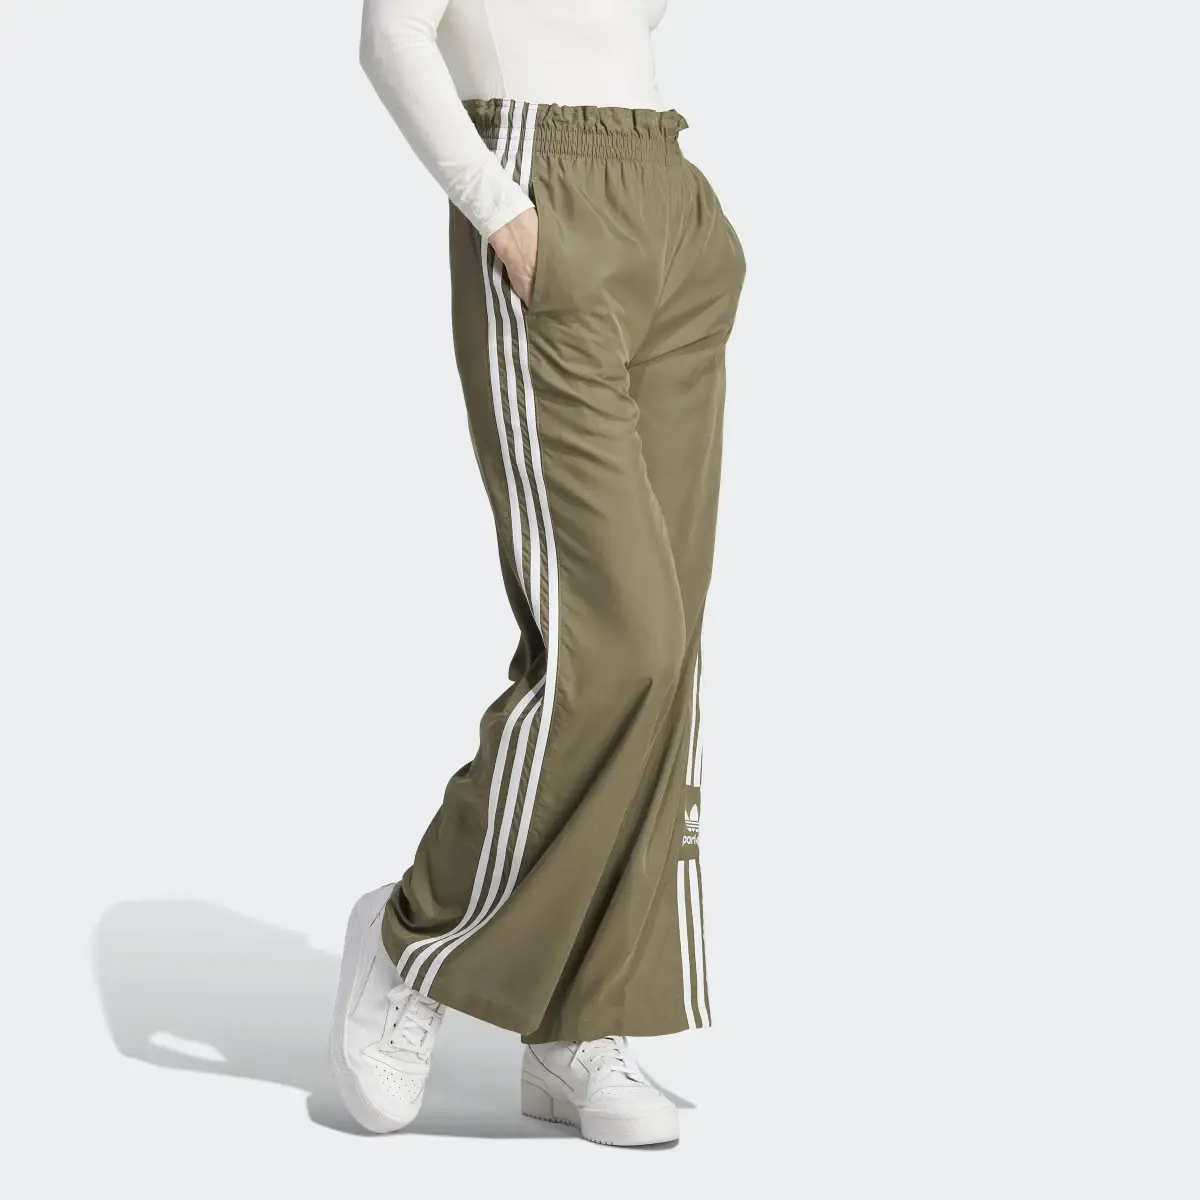 Adidas Parley Pants. 1